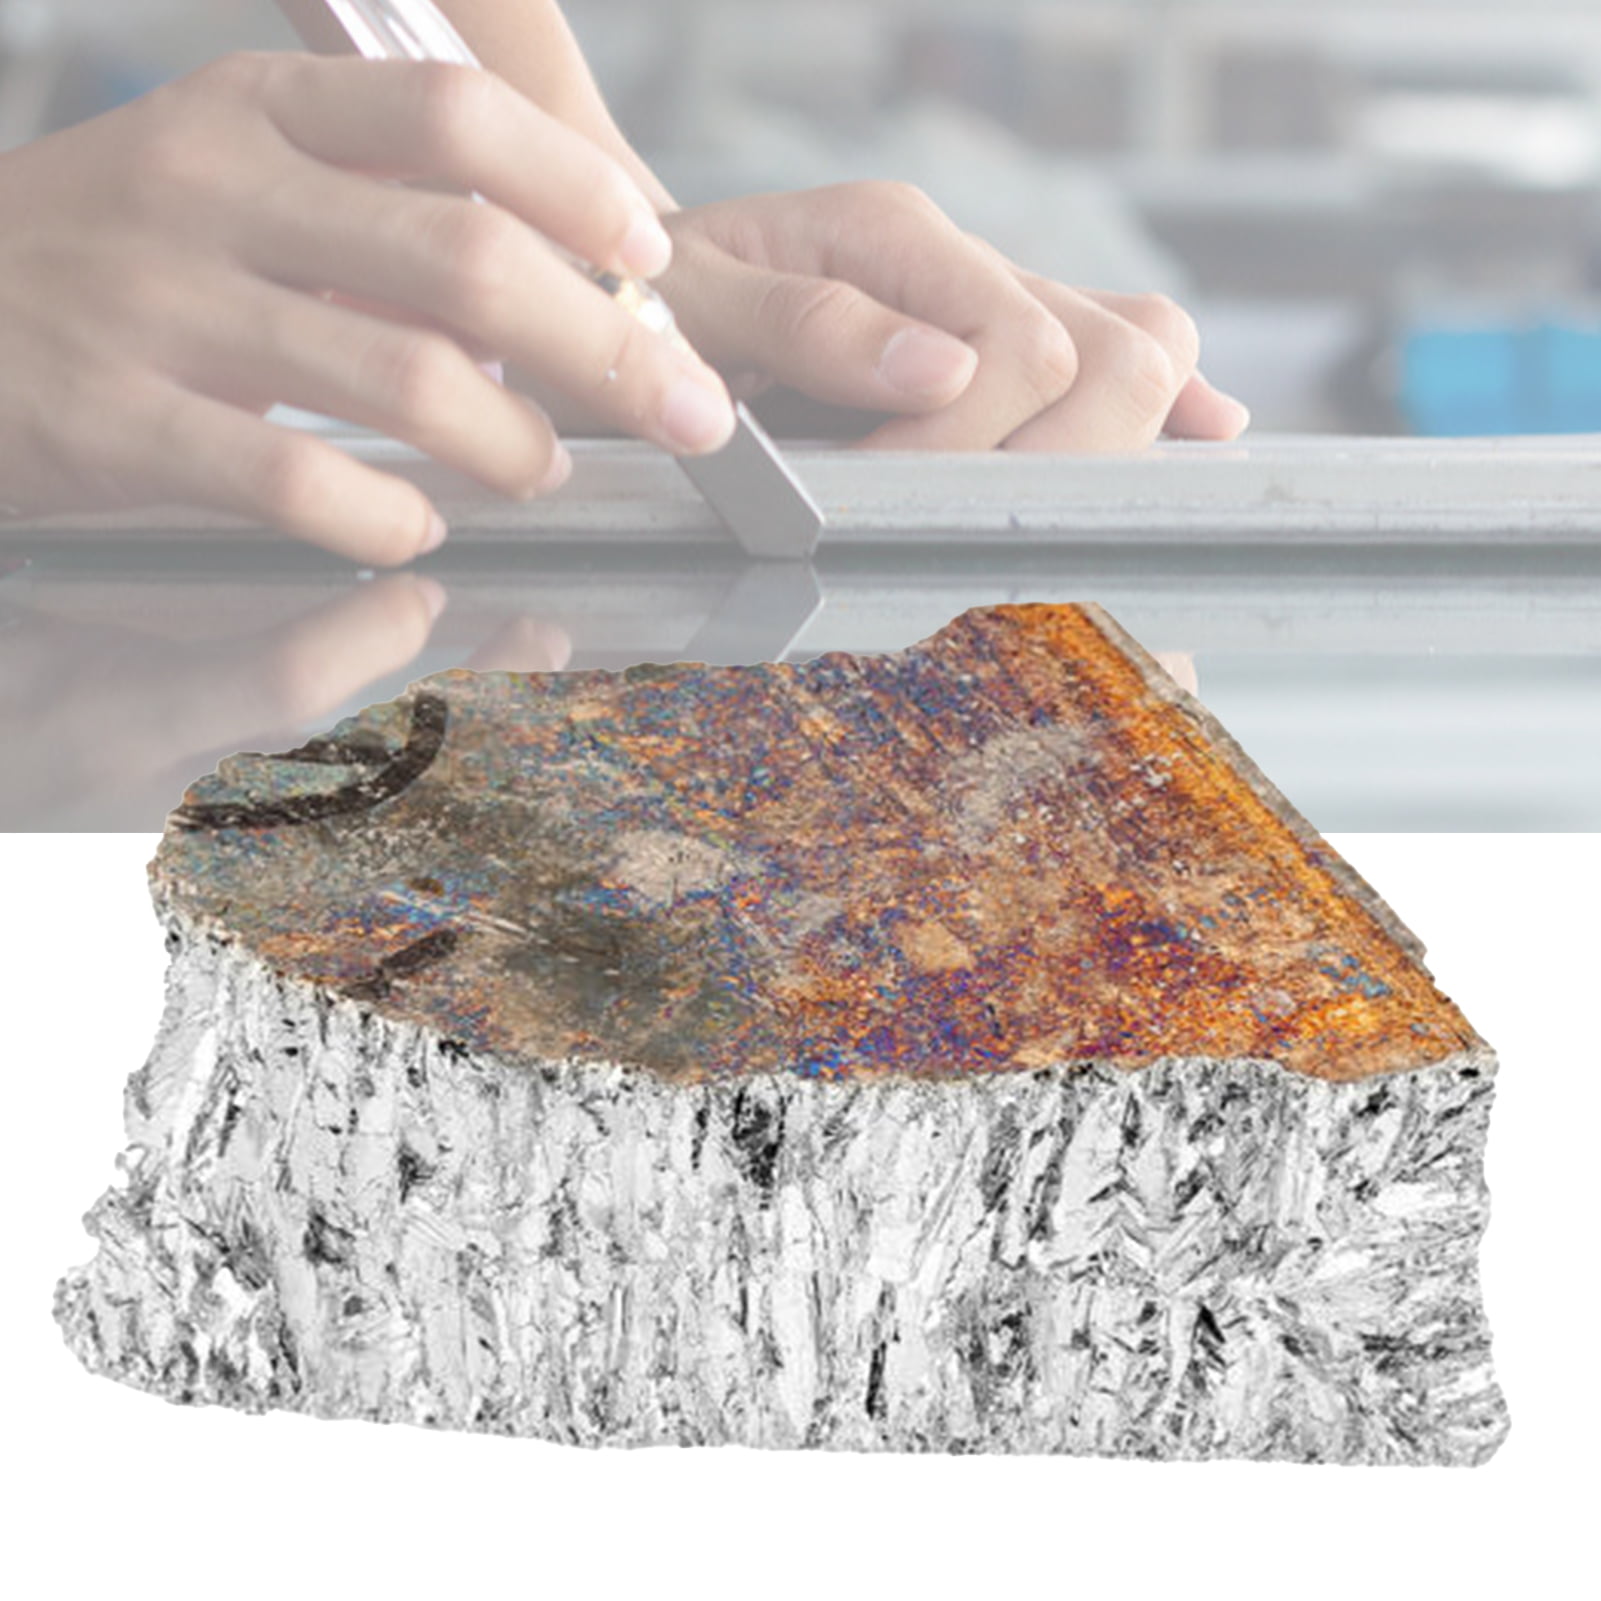 1kg Bismuth Metal Irregular Shape Diamagnetic Elementary Substance  Multipurpose Bismuth Ingot for Semiconductors 